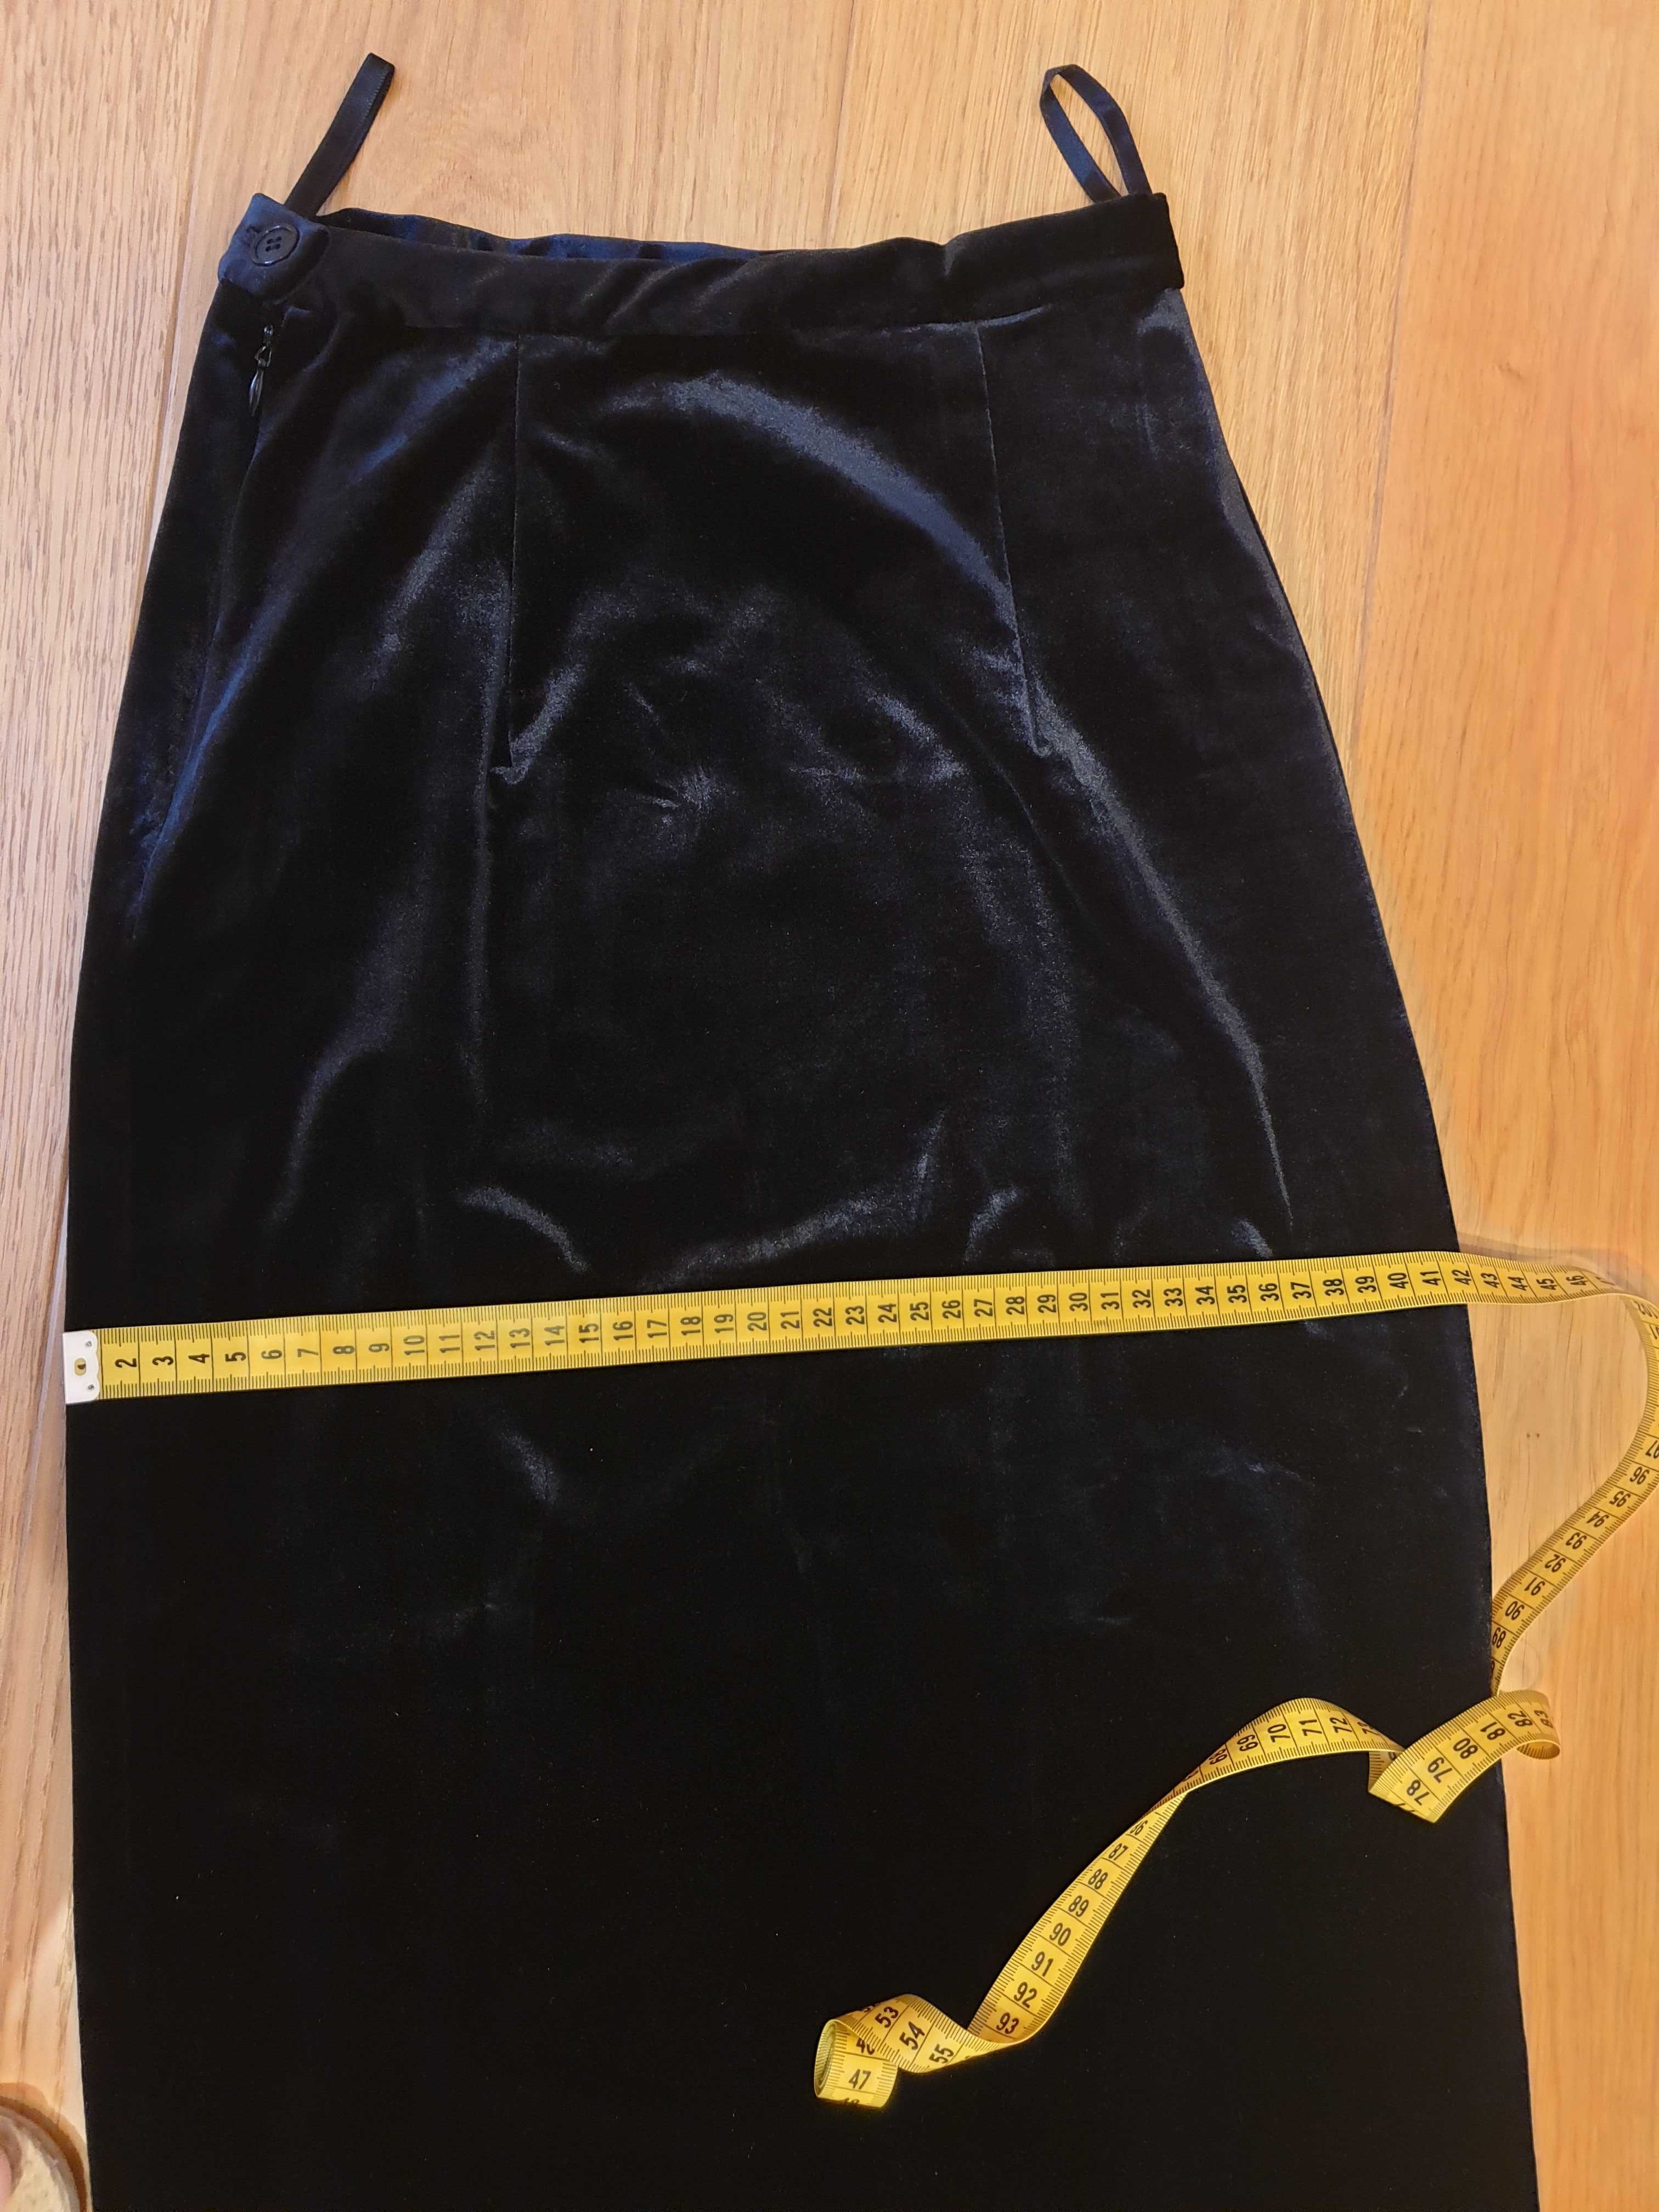 Spódnica welurowa czarna długa  rozmiar 34 szyta